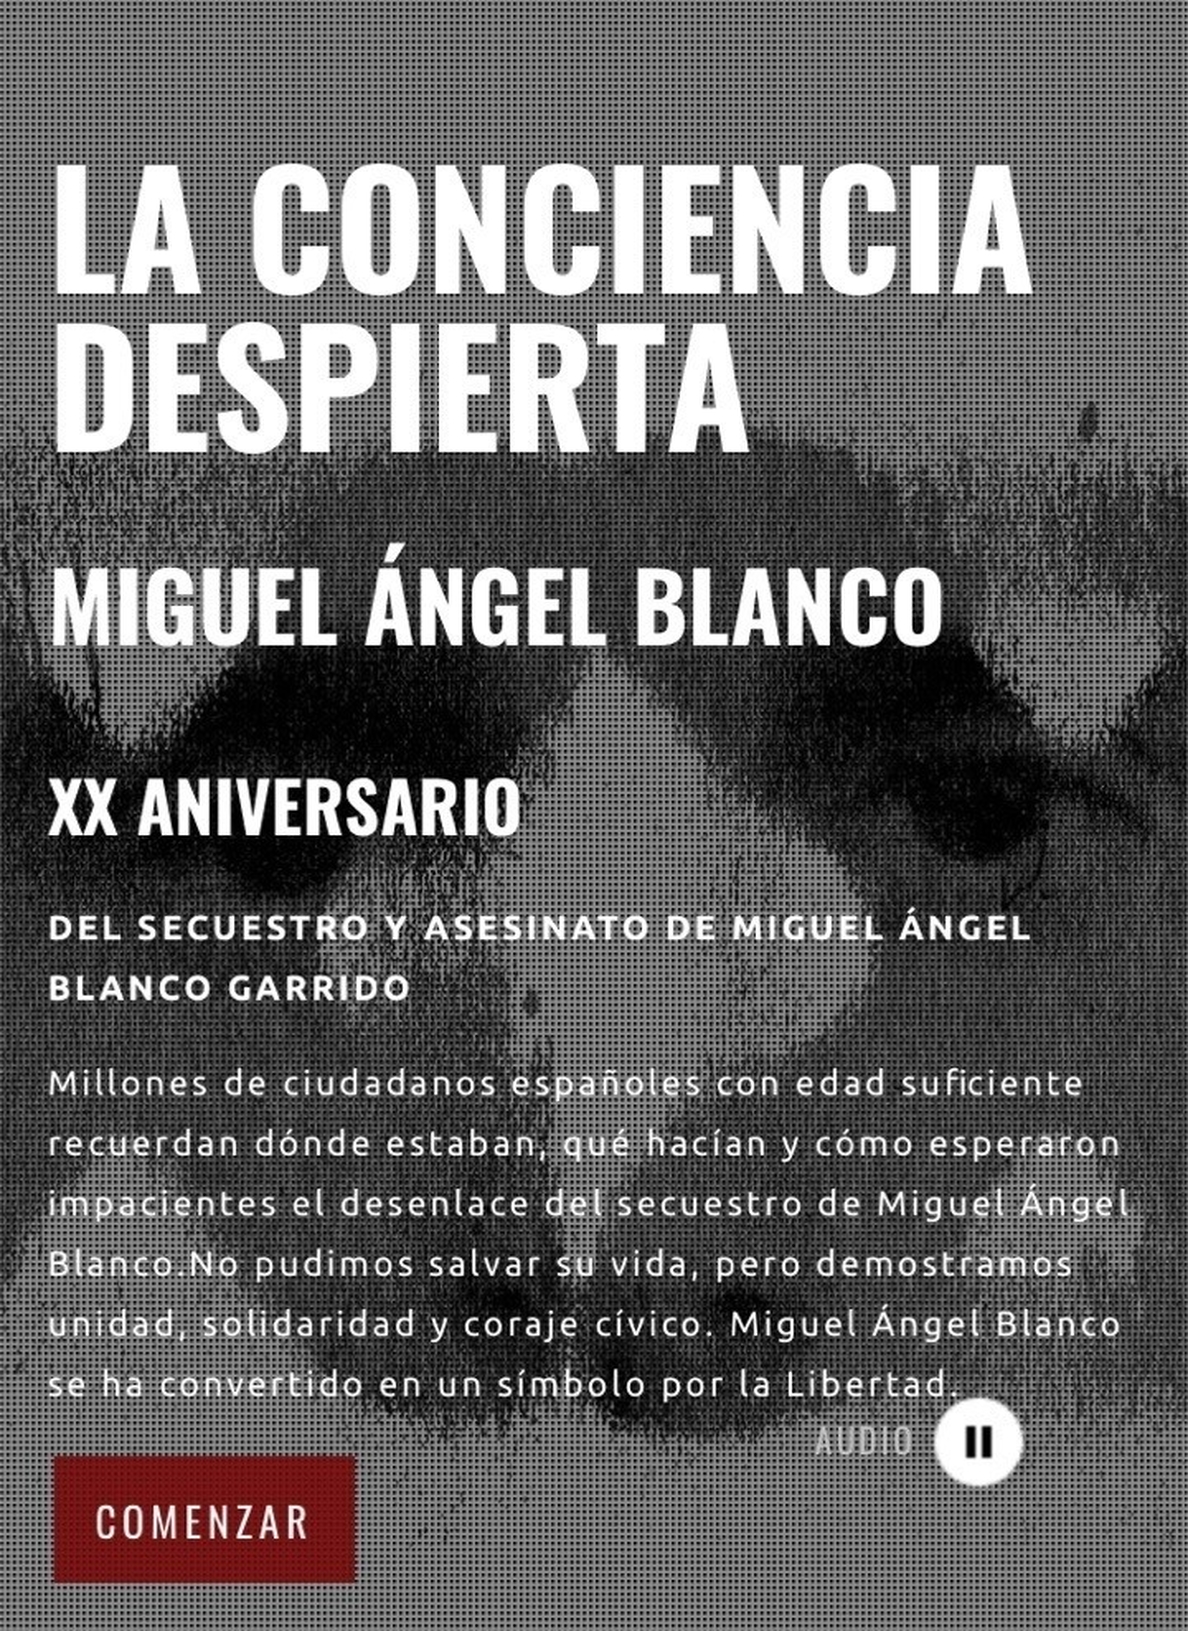 La Fundación Miguel Ángel Blanco presenta su web coincidiendo con el 20º aniversario de su asesinato